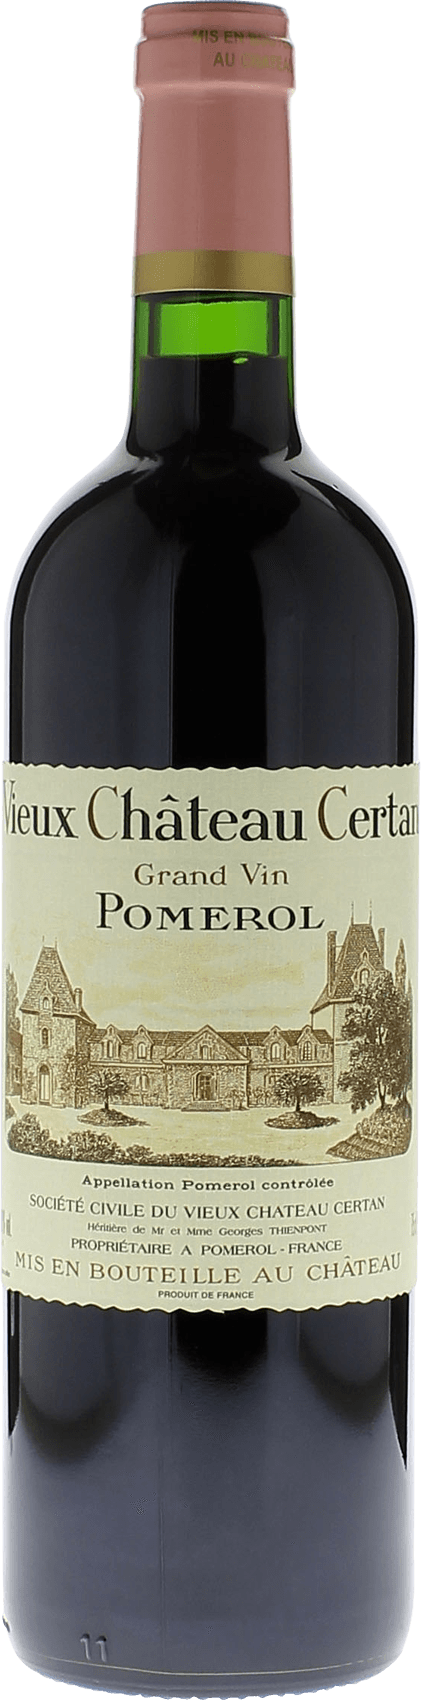 Vieux chteau  certan 1992  Pomerol, Bordeaux rouge